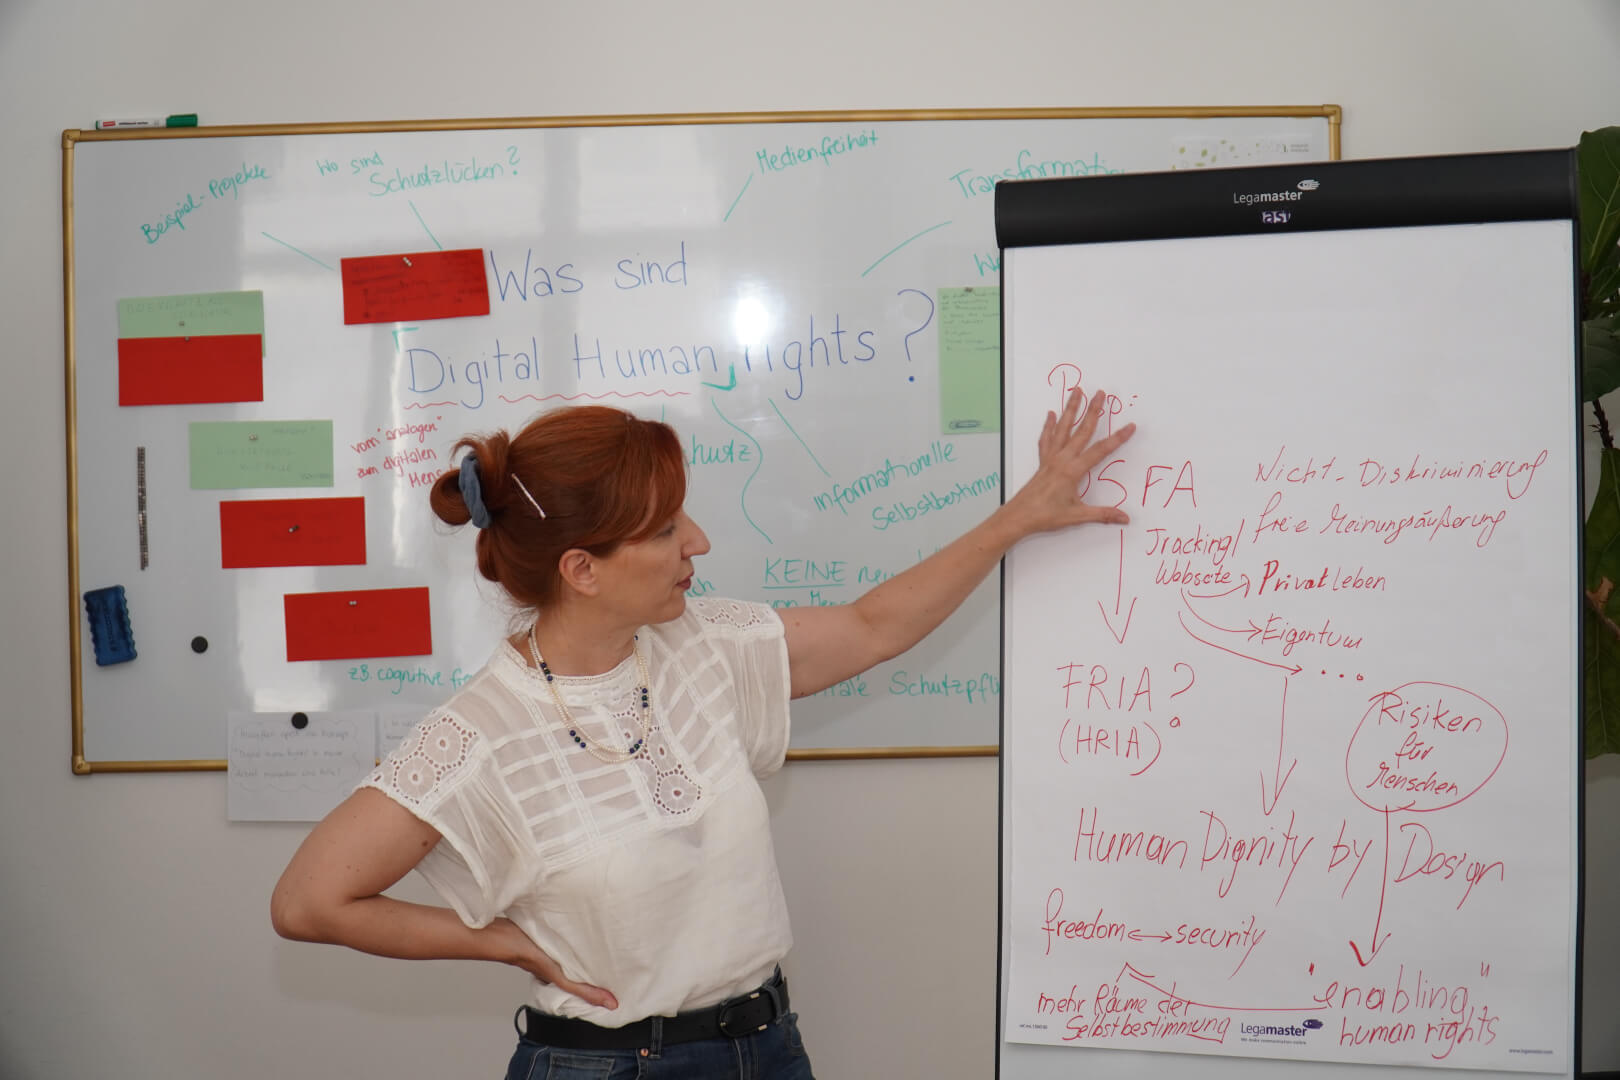 Tünde Fülöp, eine rothaarige Frau, steht vor einem Whiteboard mit vielen Begriffen, unter anderem: Was sind Digital Human Rights? sie zeigt auf ein Flipchard auf dem DSFA steht (Datenschutzfolgenabschätzung) Sowie Human Dignity by Design